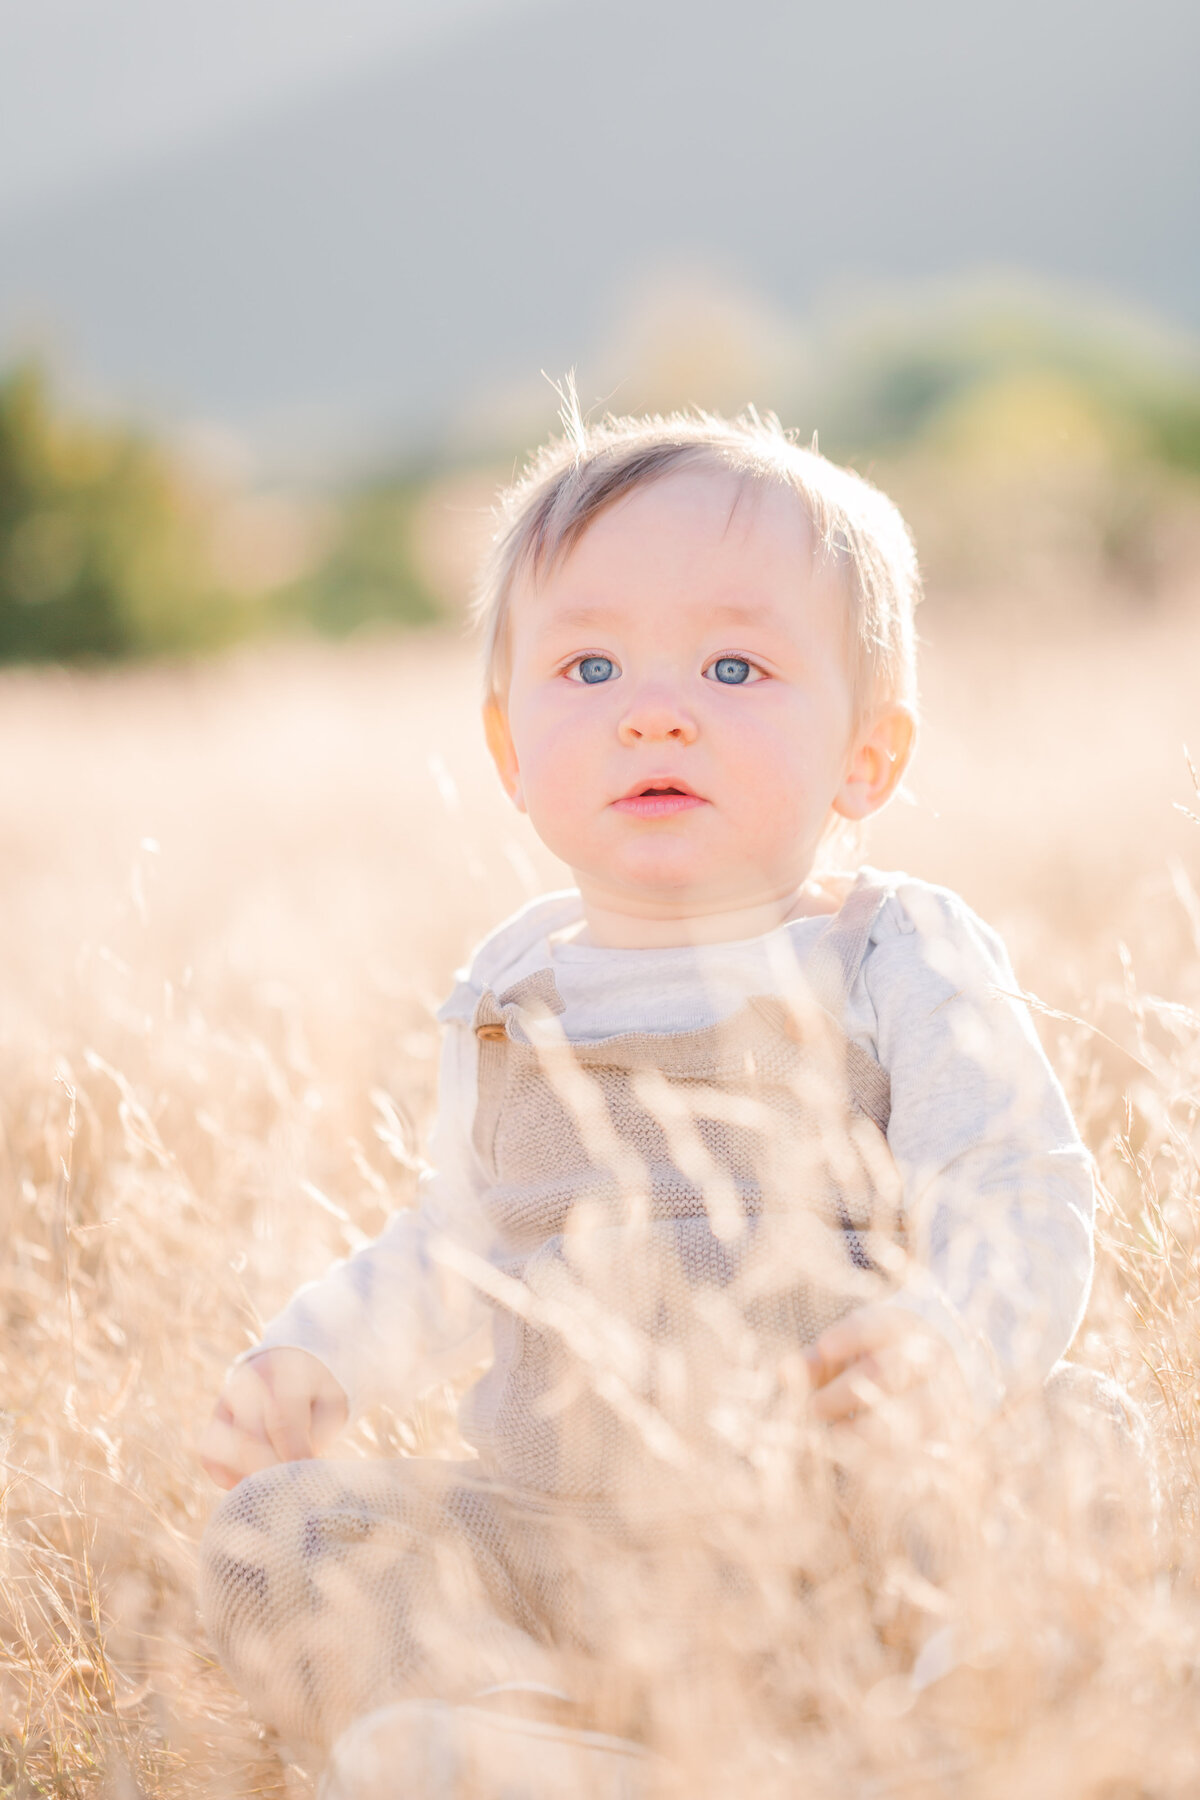 Baby boy with big blue eyes sitting in a field